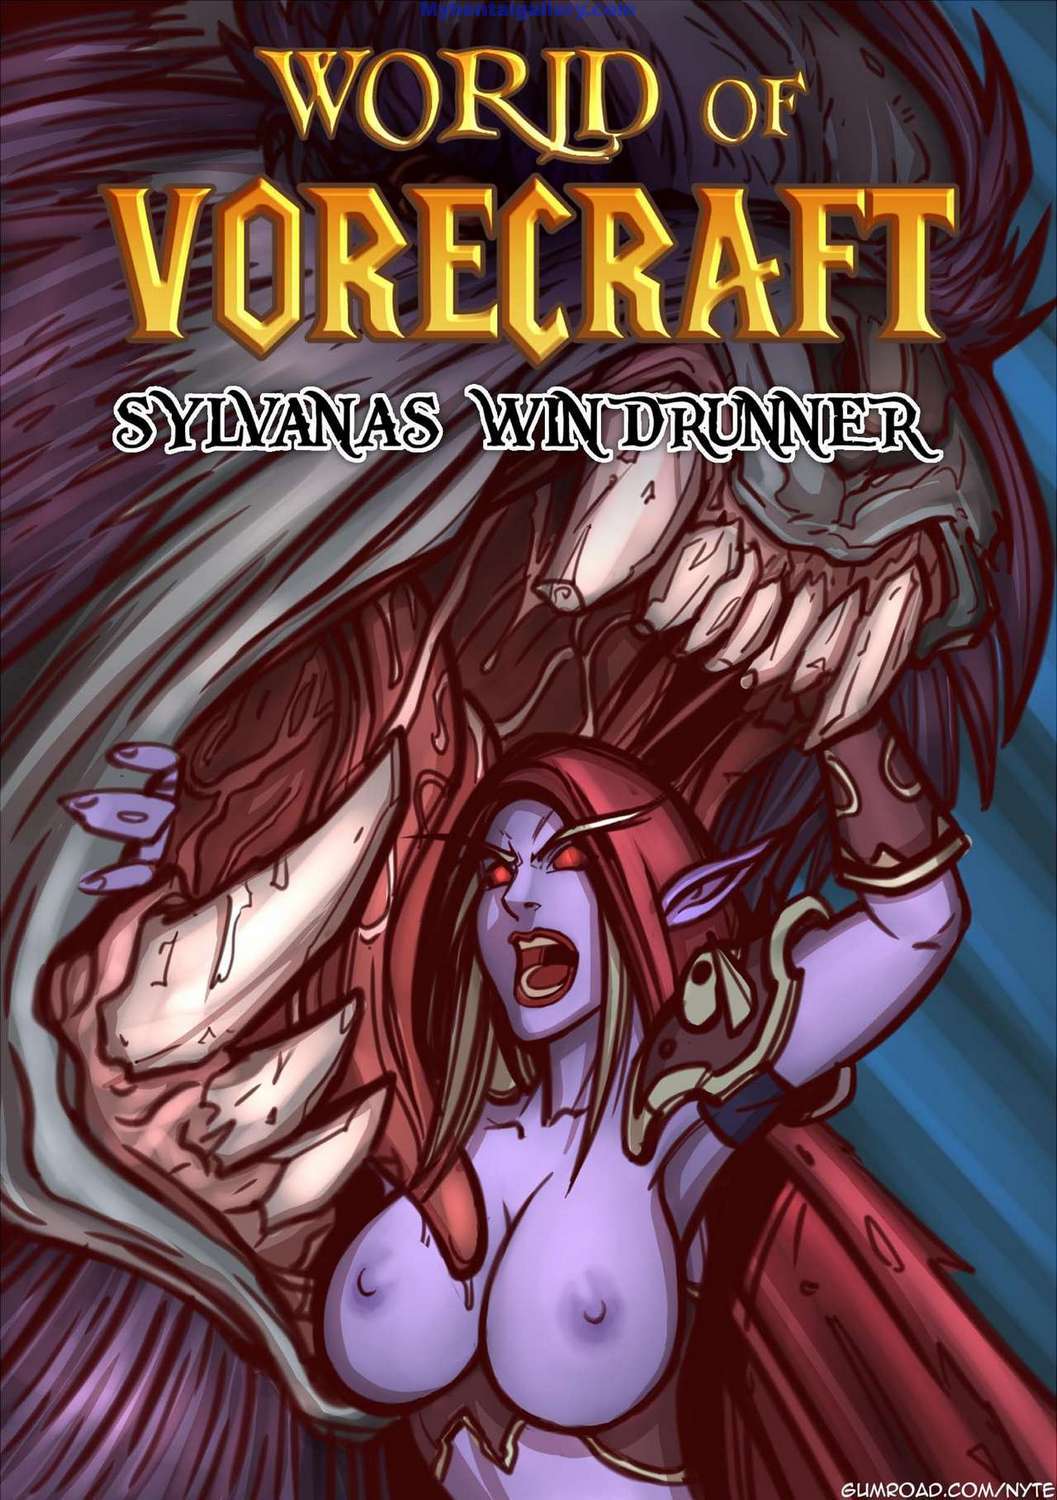 World of Vorecraft - Sylvanas Windrunner